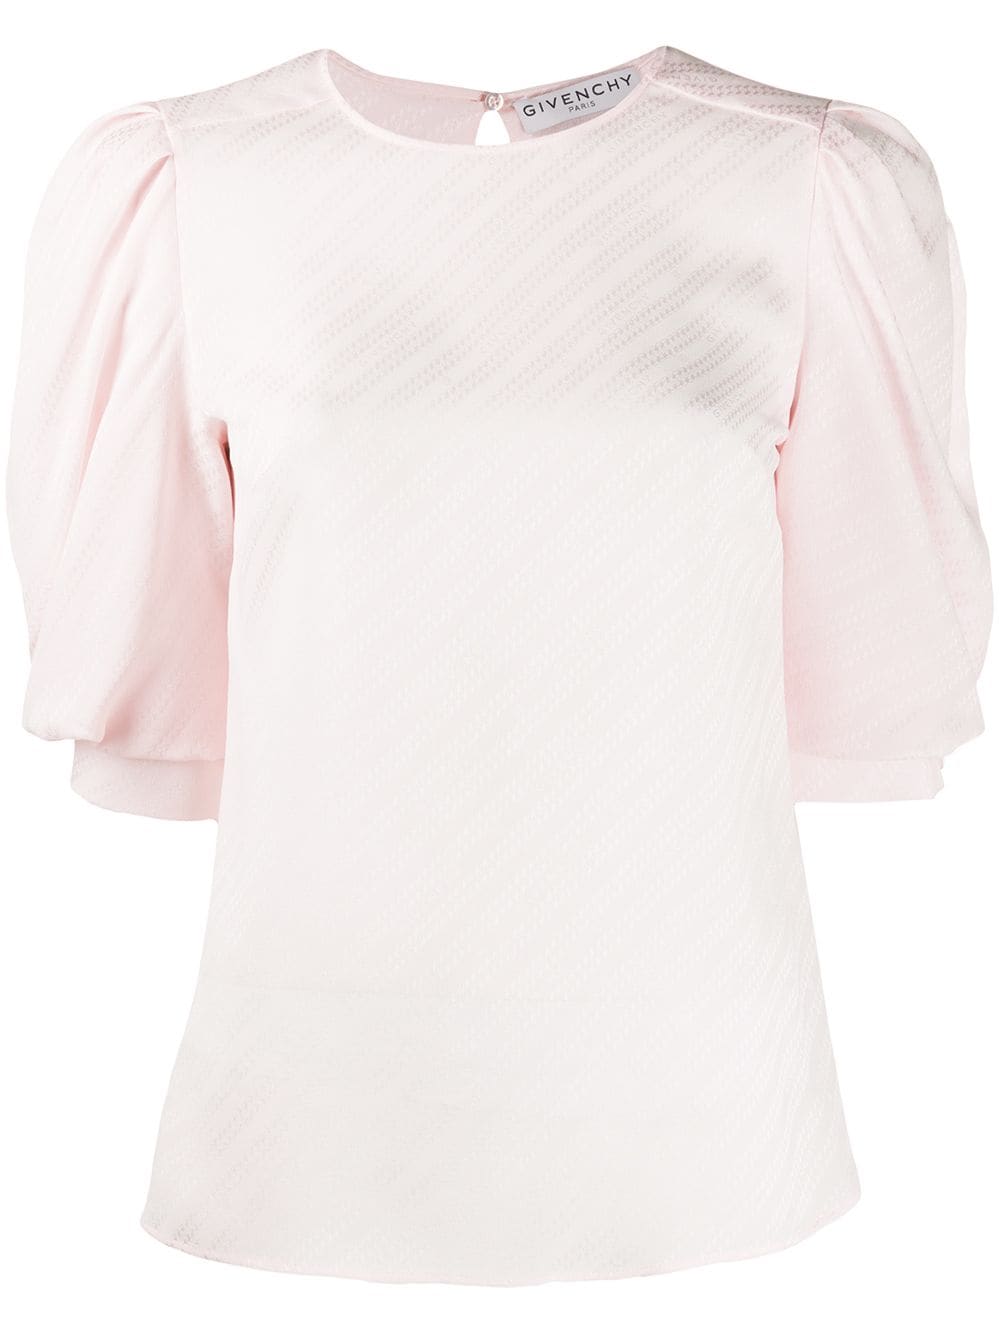 фото Givenchy жаккардовая блузка с пышными рукавами